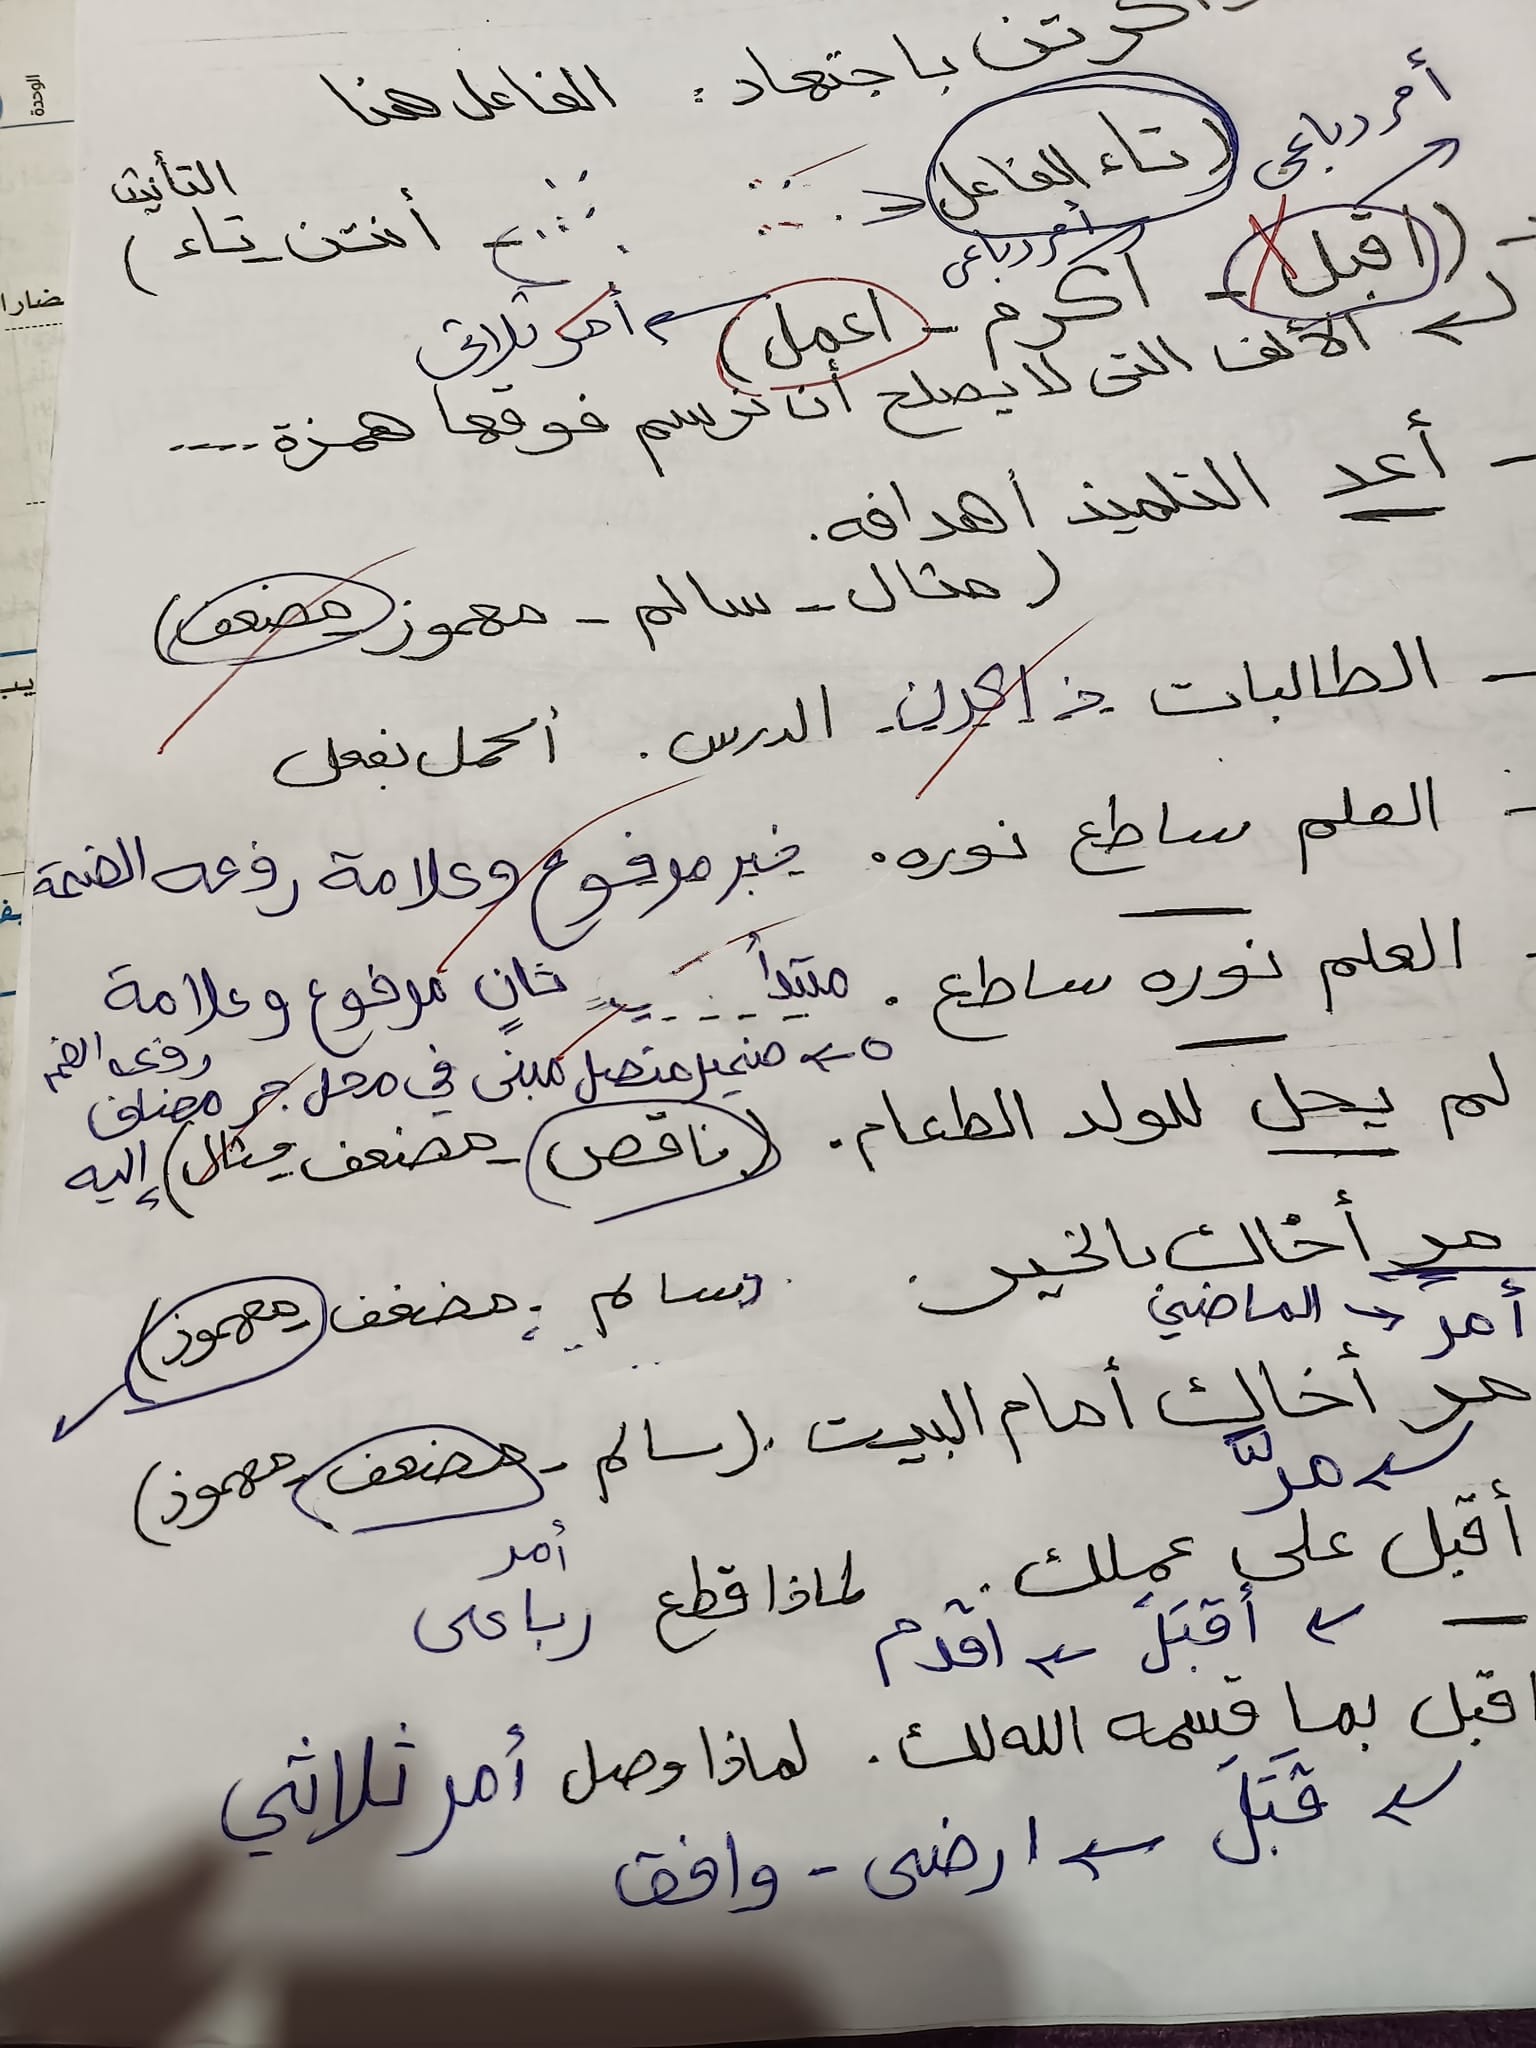 مدرس اول مراجعة نحو بالاجابات فى اللغة العربية للصف الأول الإعدادي الترم الأول أ/ مها سعيد	